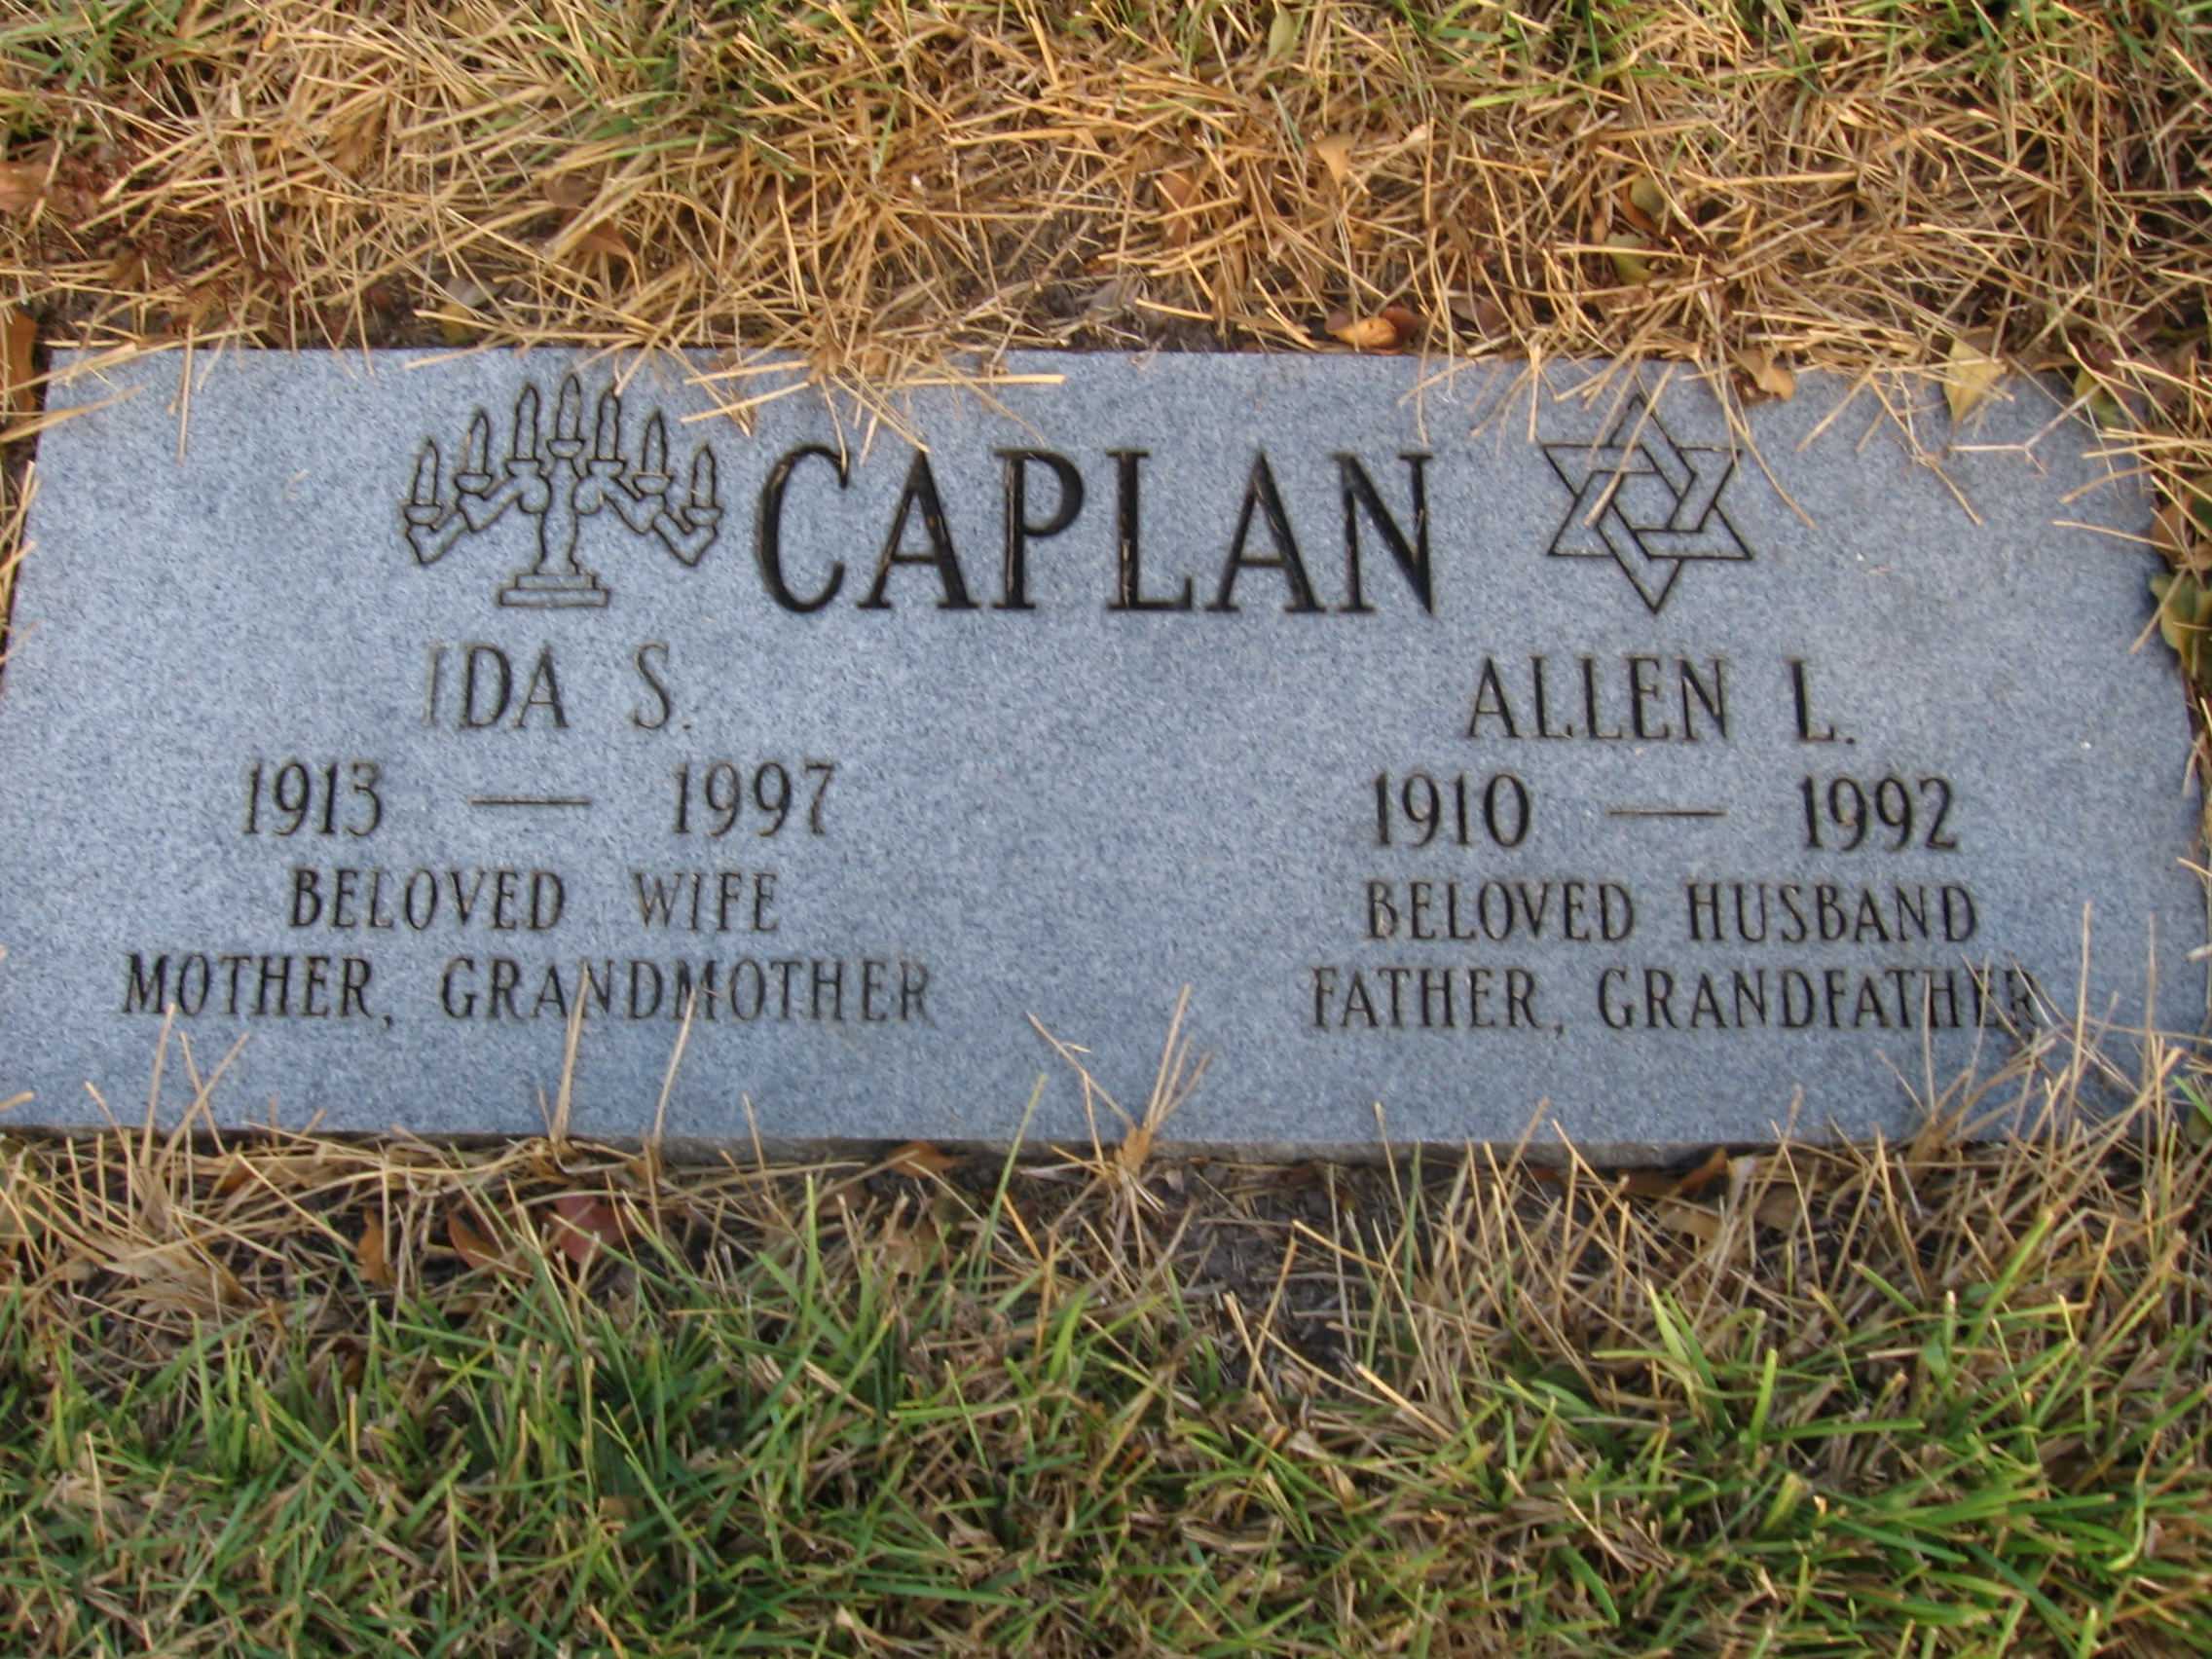 Allen L Caplan